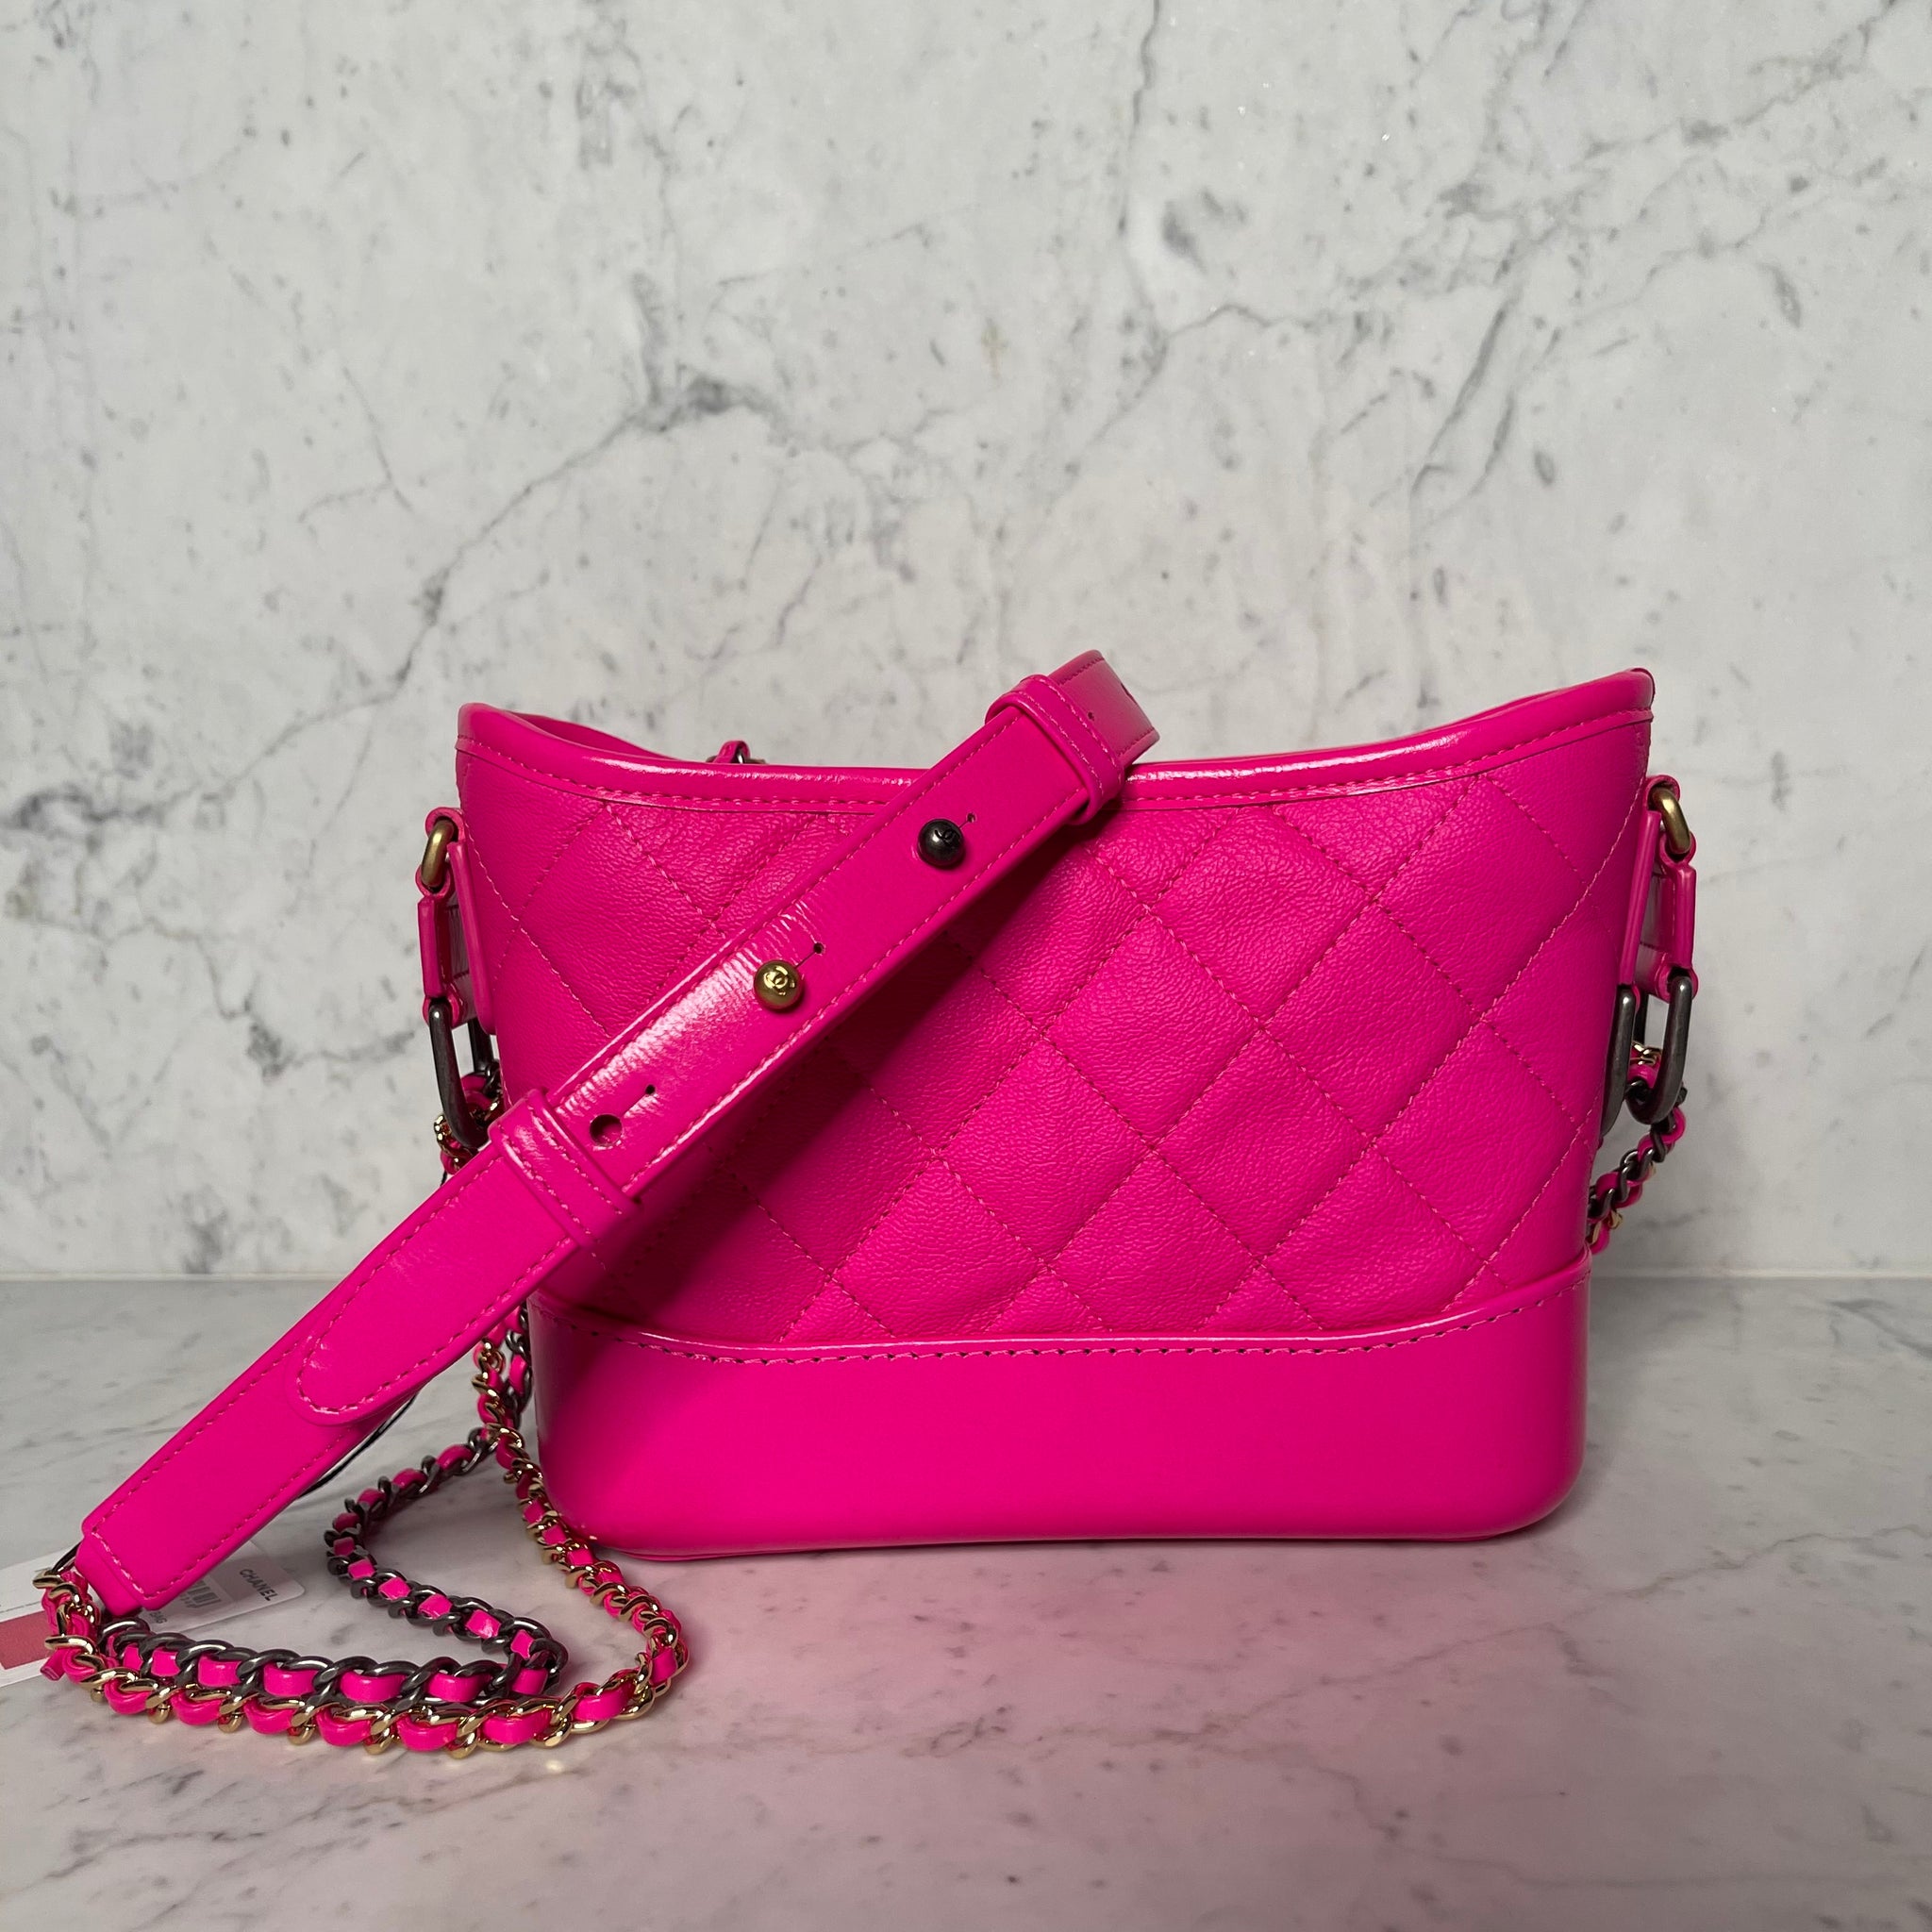 Chanel Gabrielle Leather Handbag